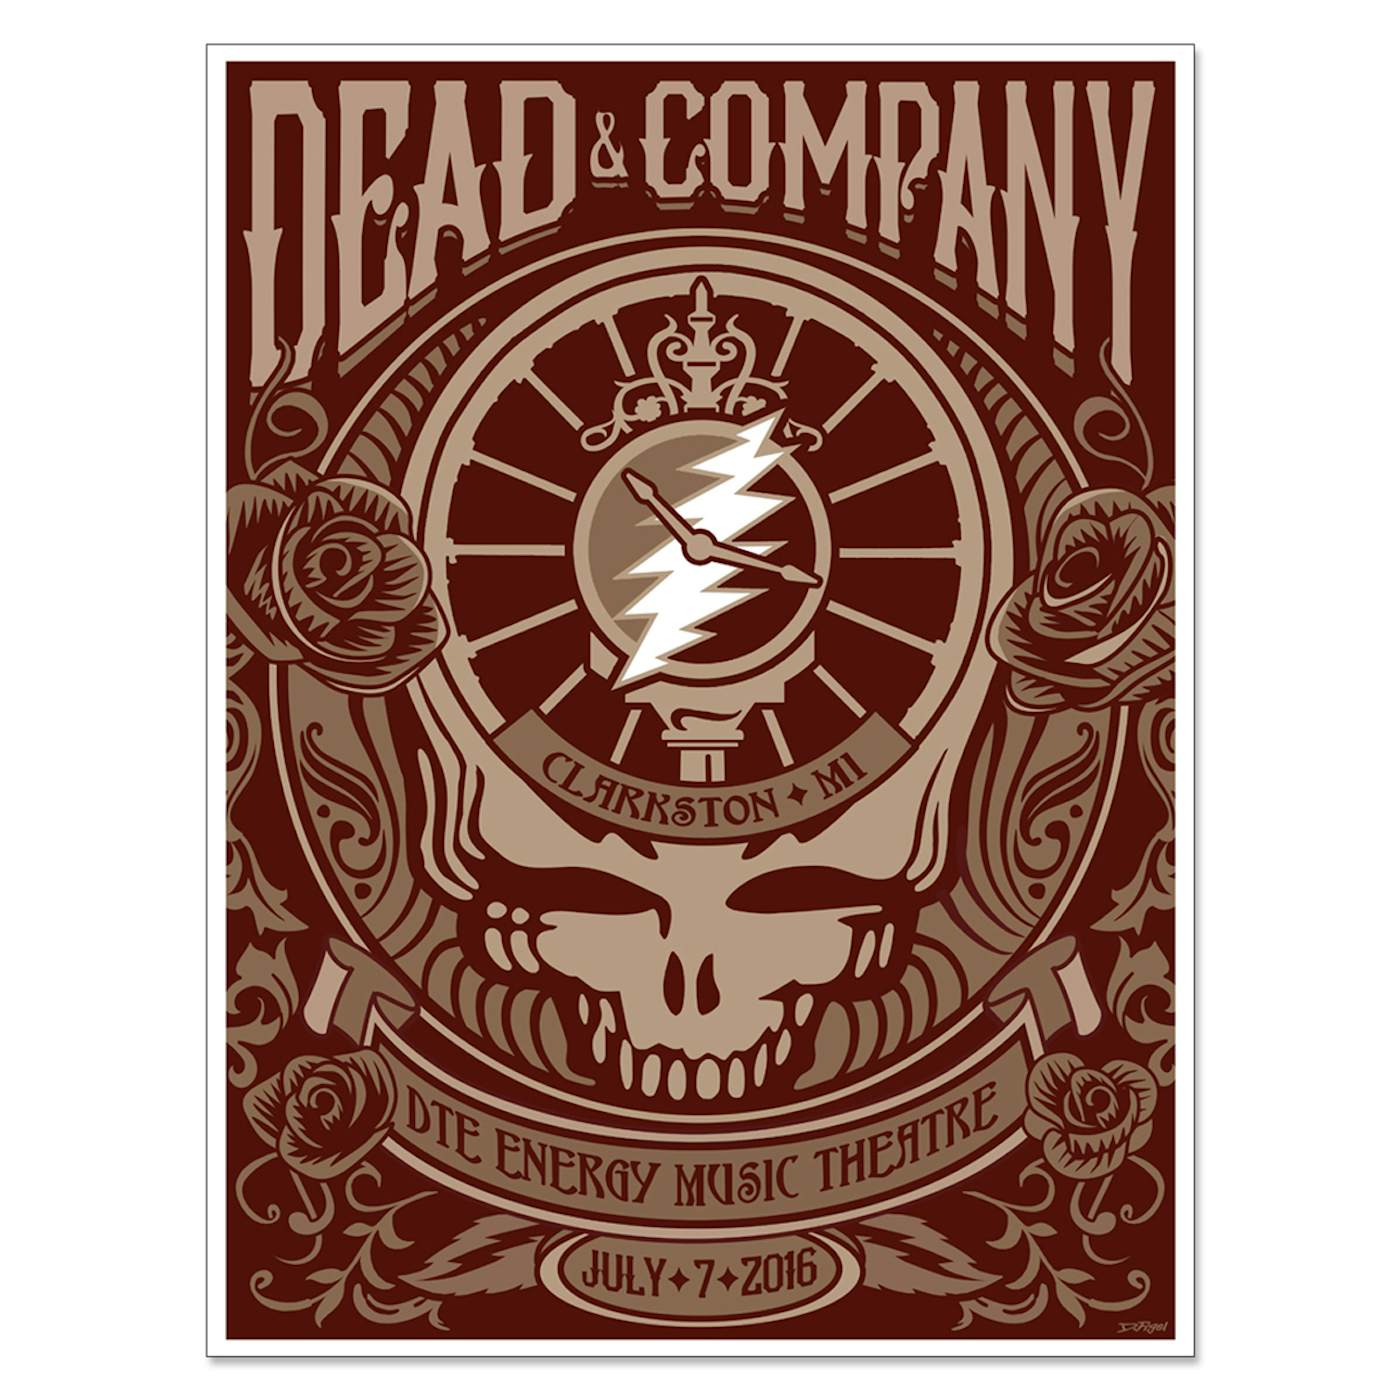 Dead & Company Clarkston, Michigan Exclusive Event Poster